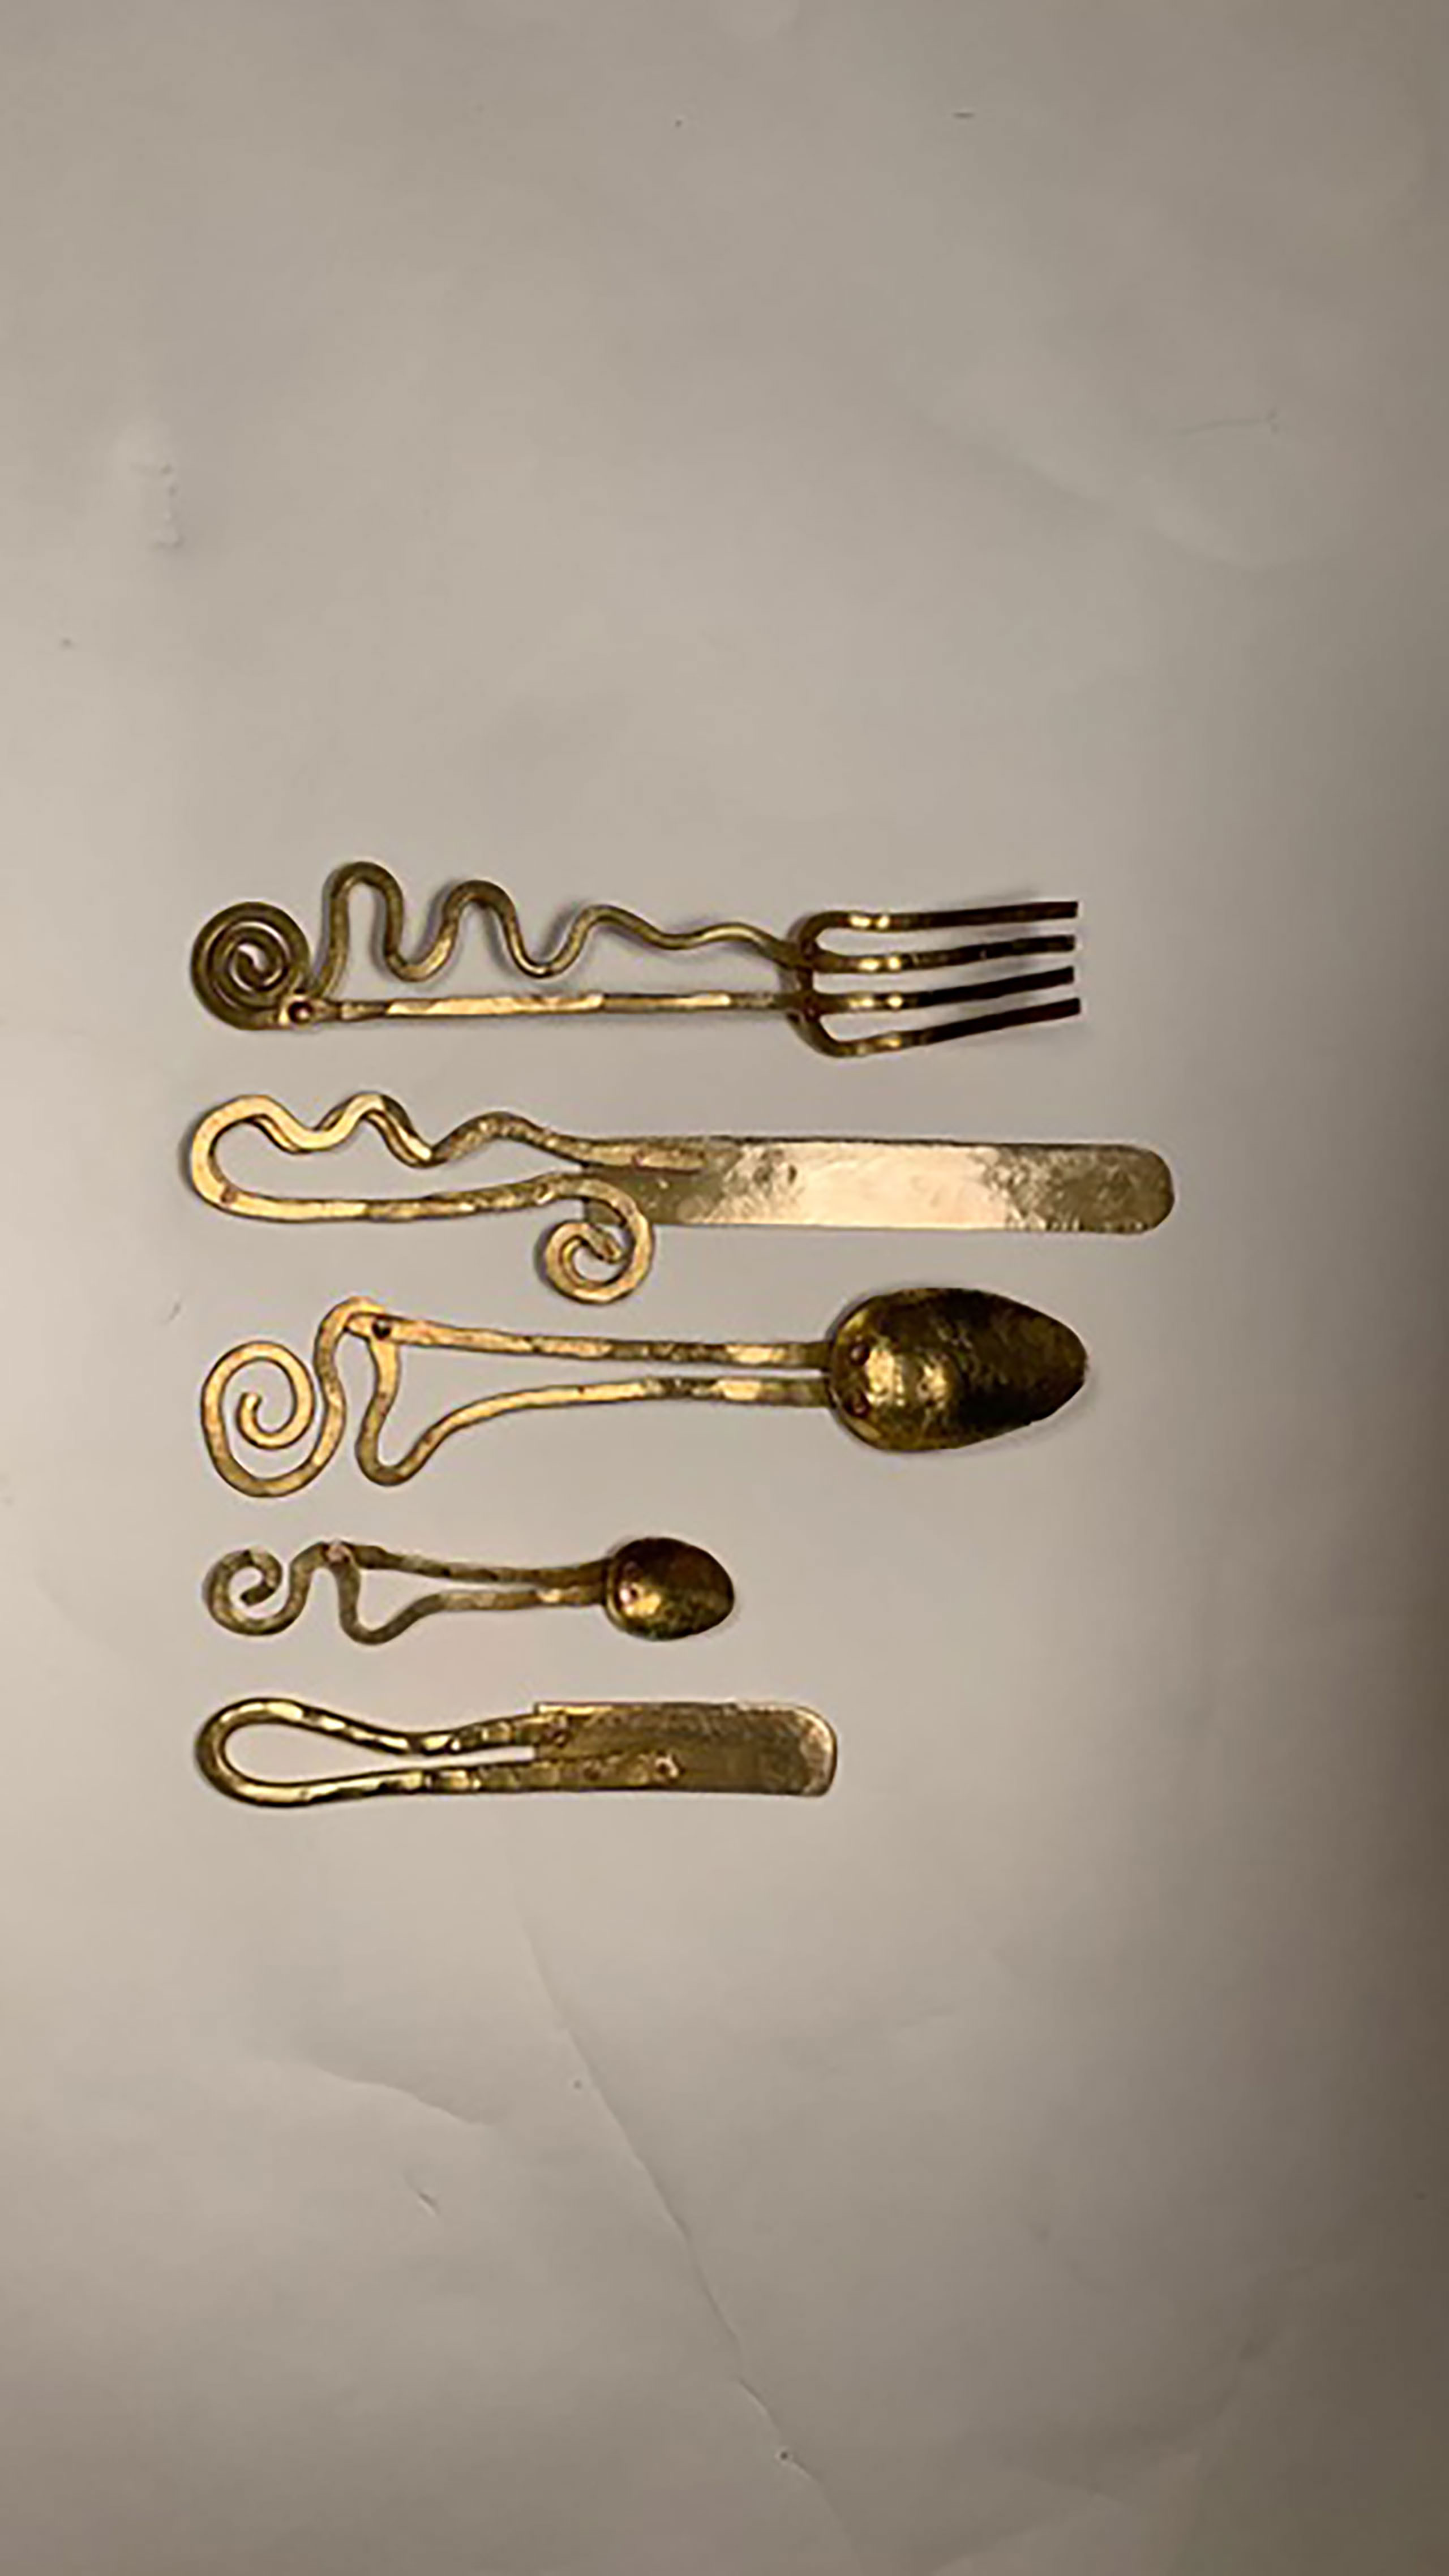 Handmade cutlery by Sebastião Lobo © Sebastião Lobo.